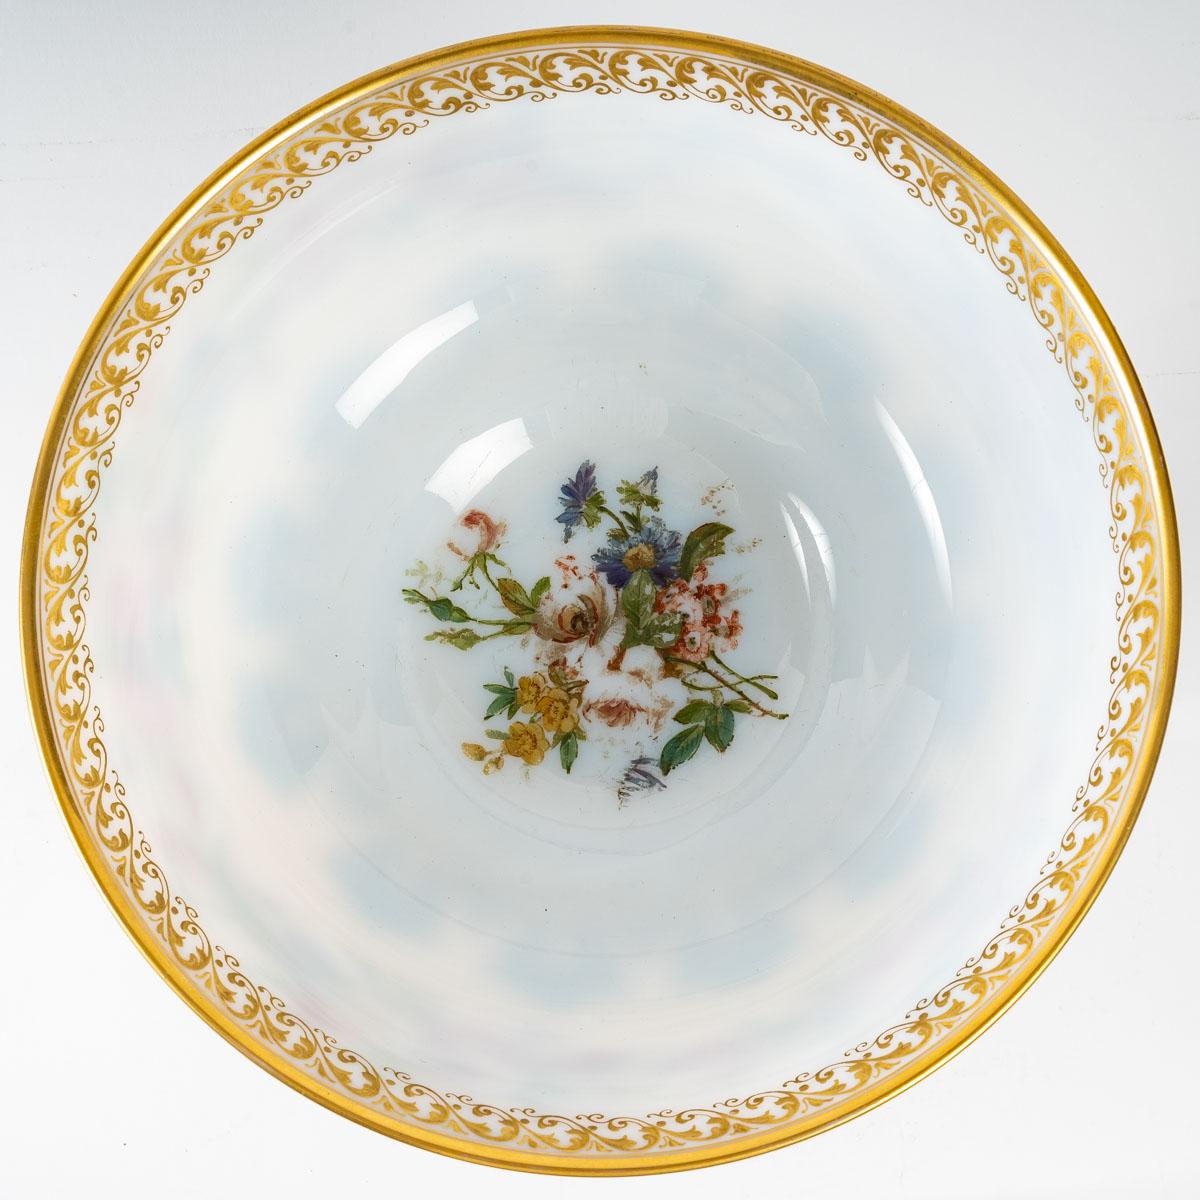 Baccarat-Opalbecher, 19. Jahrhundert, Napoleon III.-Periode, sehr schöne Blumendekorationen.
Maße: H: 25 cm, T: 25 cm.